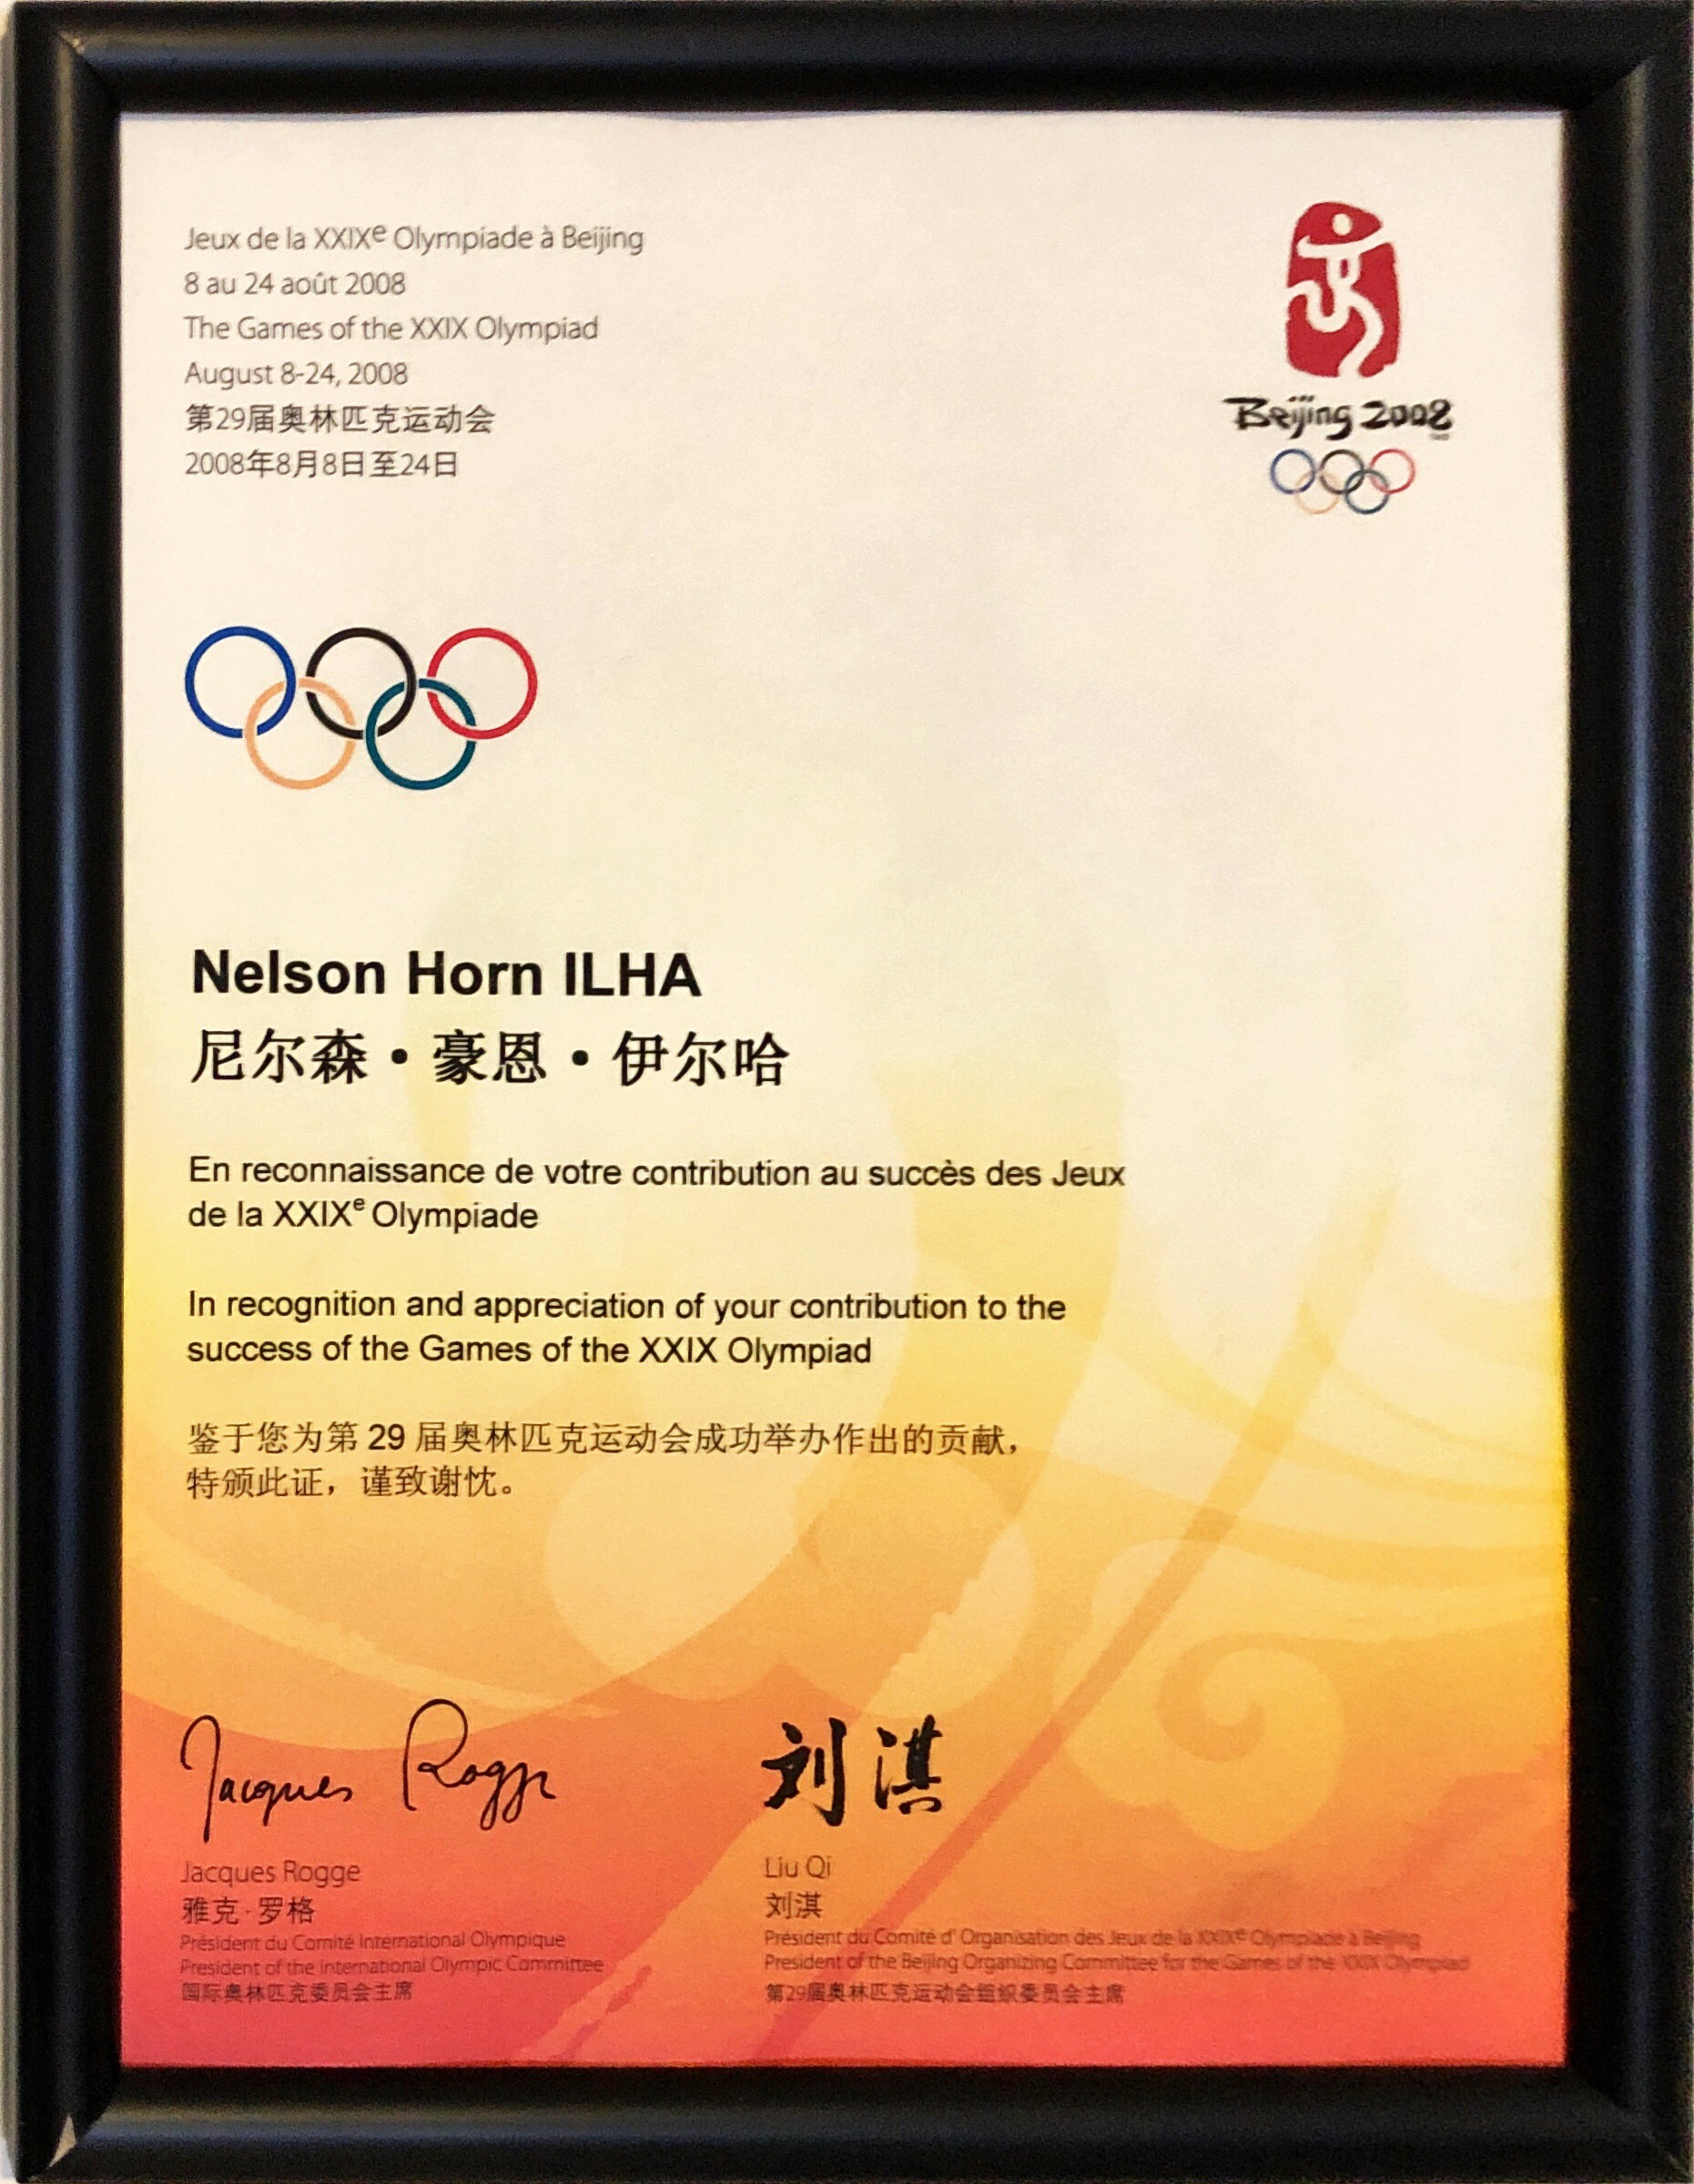 Beijin Olympic Games